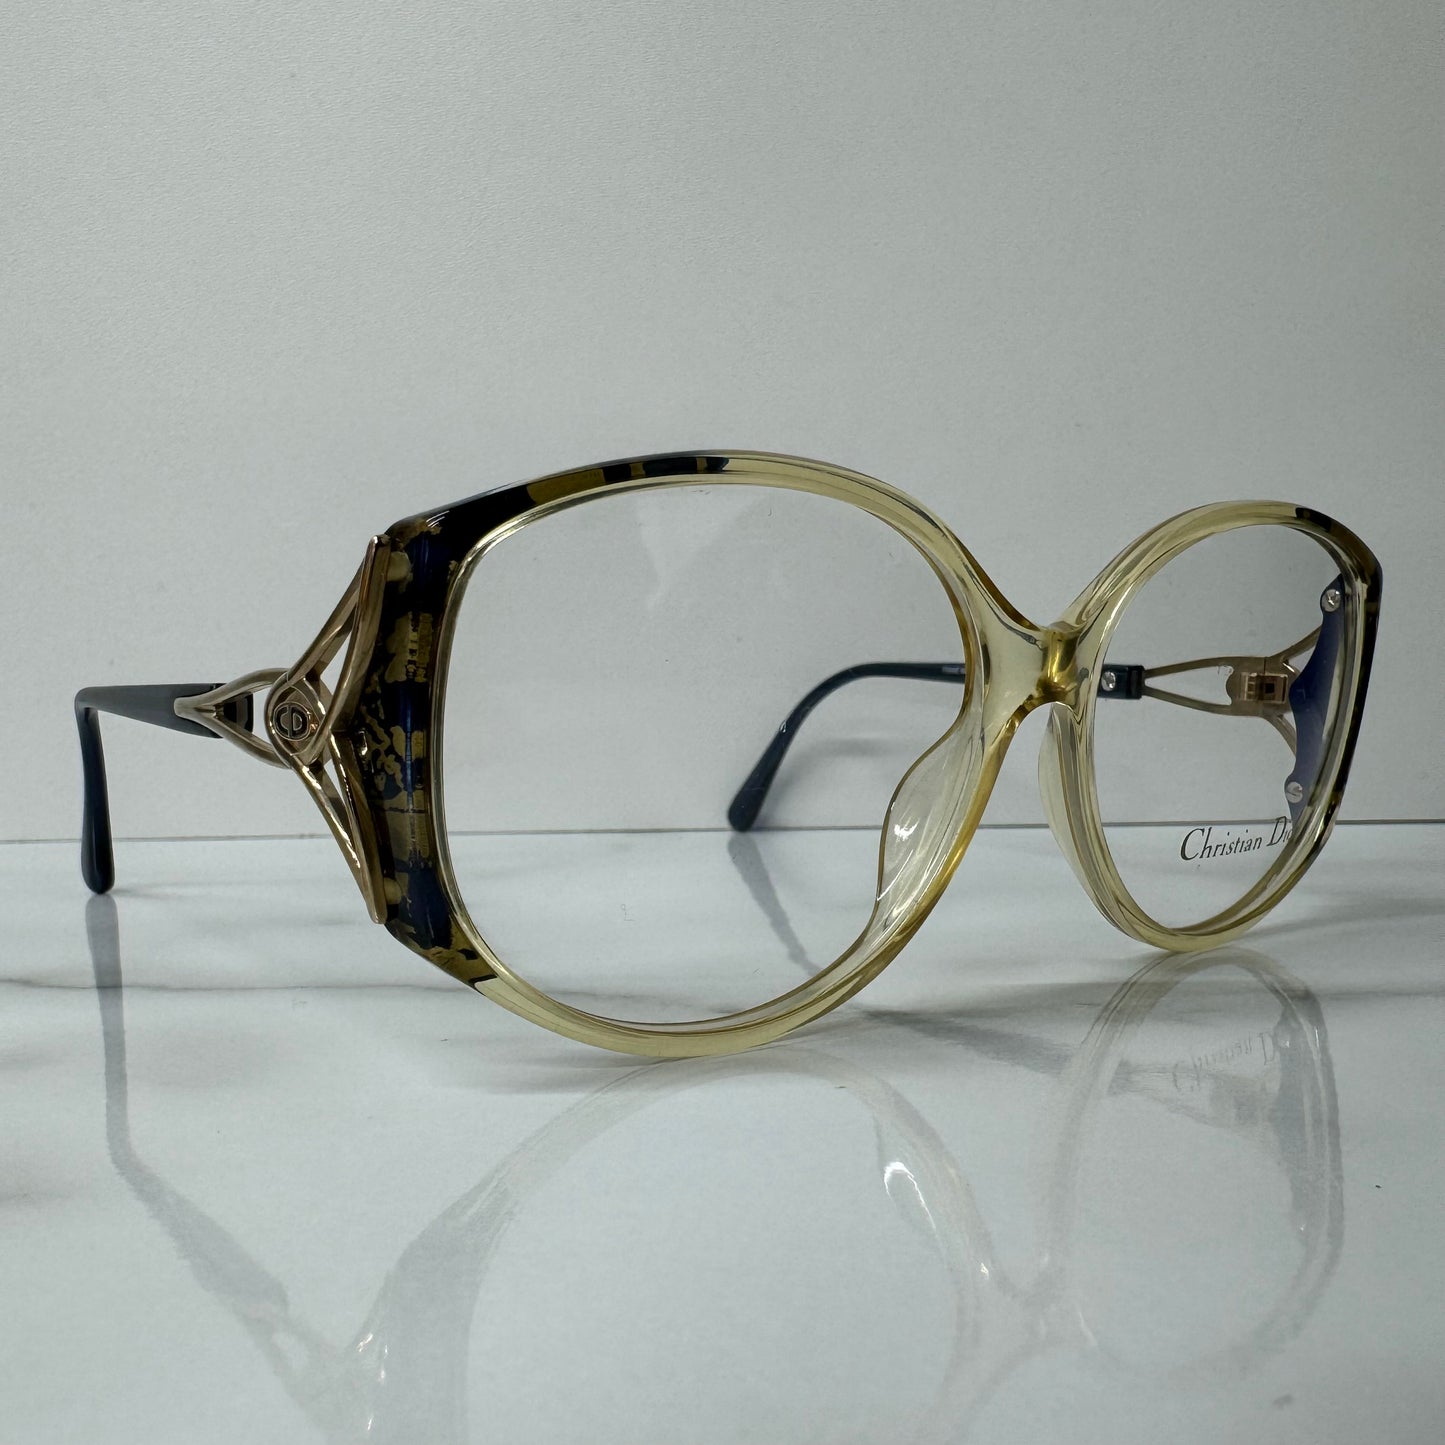 Vintage Christian Dior Glasses Frames - 2709 Clear & Blue Round Eyeglasses